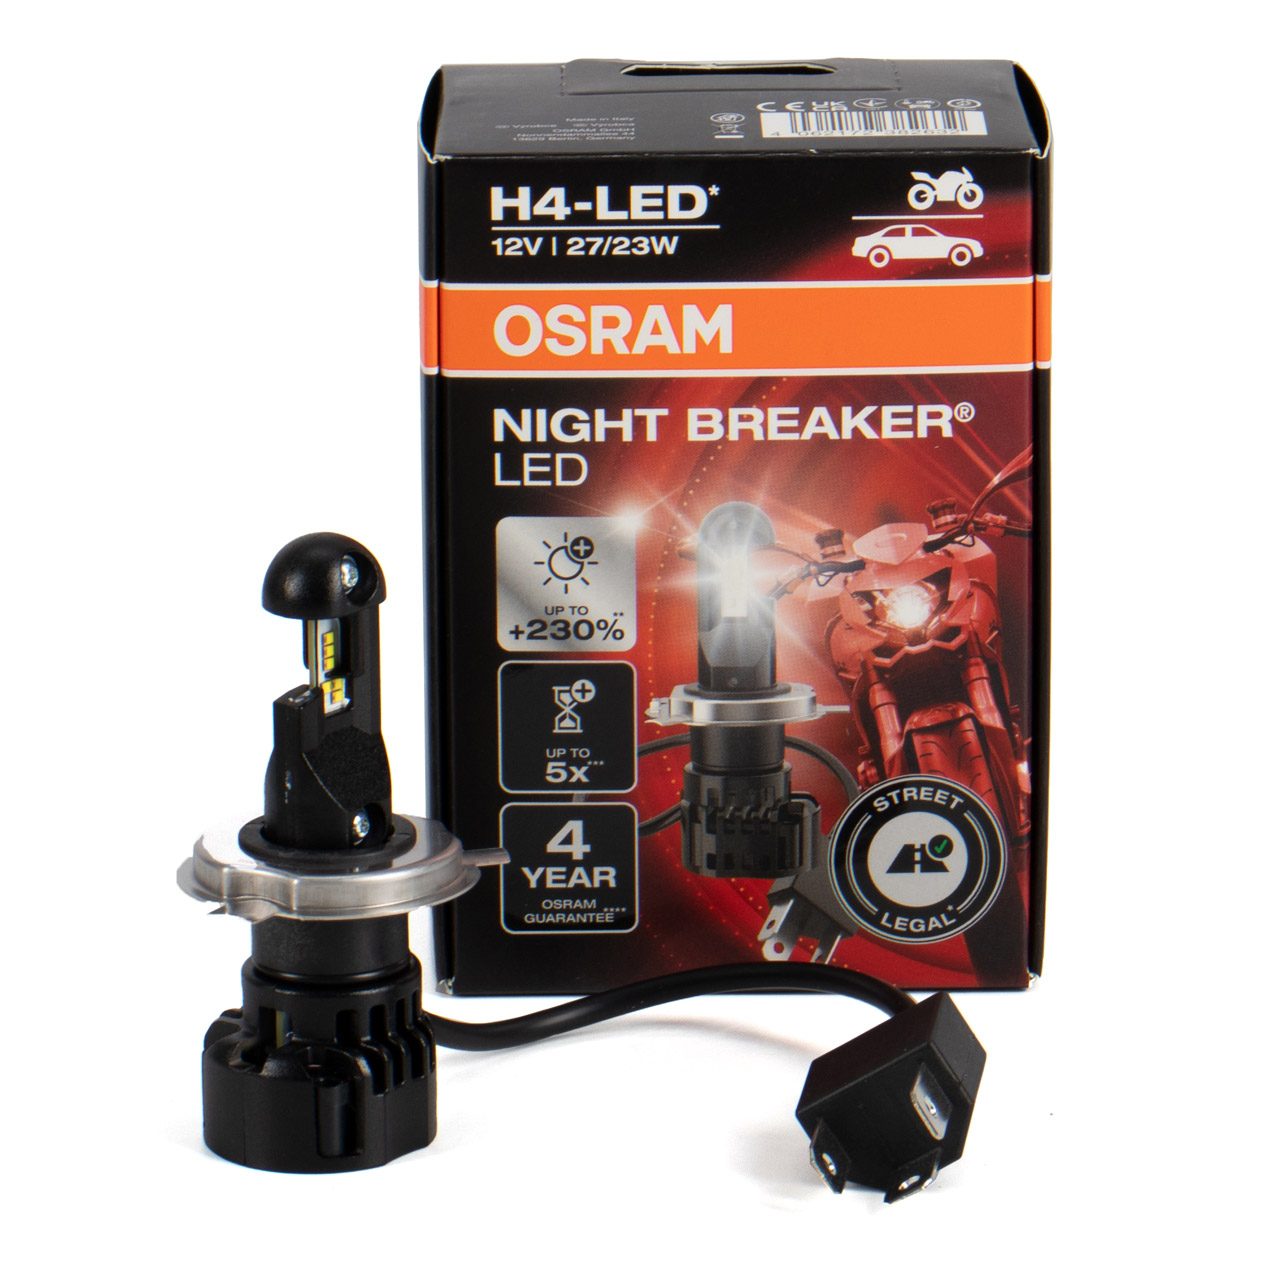 OSRAM H4 NIGHT BREAKER LED Motorrad Abblendlicht mit